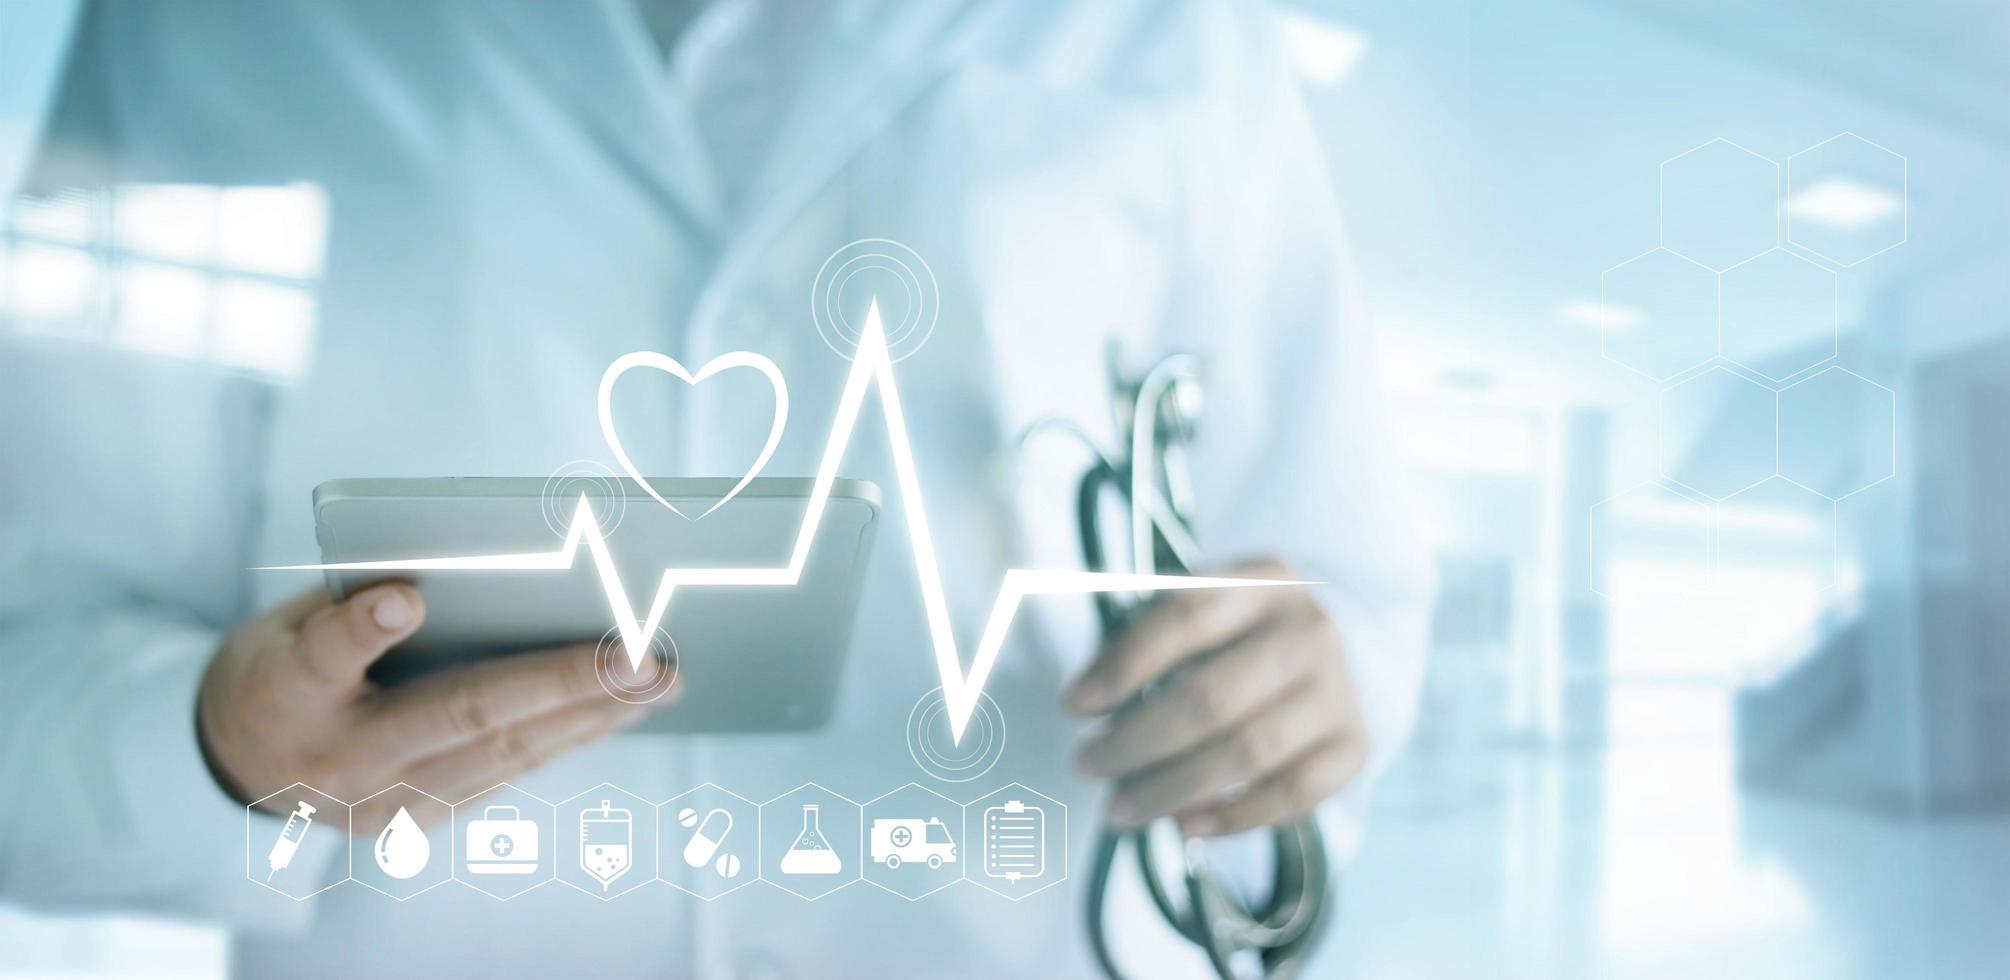 médico usando tablet digital com ícone médico e taxa de batimentos cardíacos no fundo do hospital foto